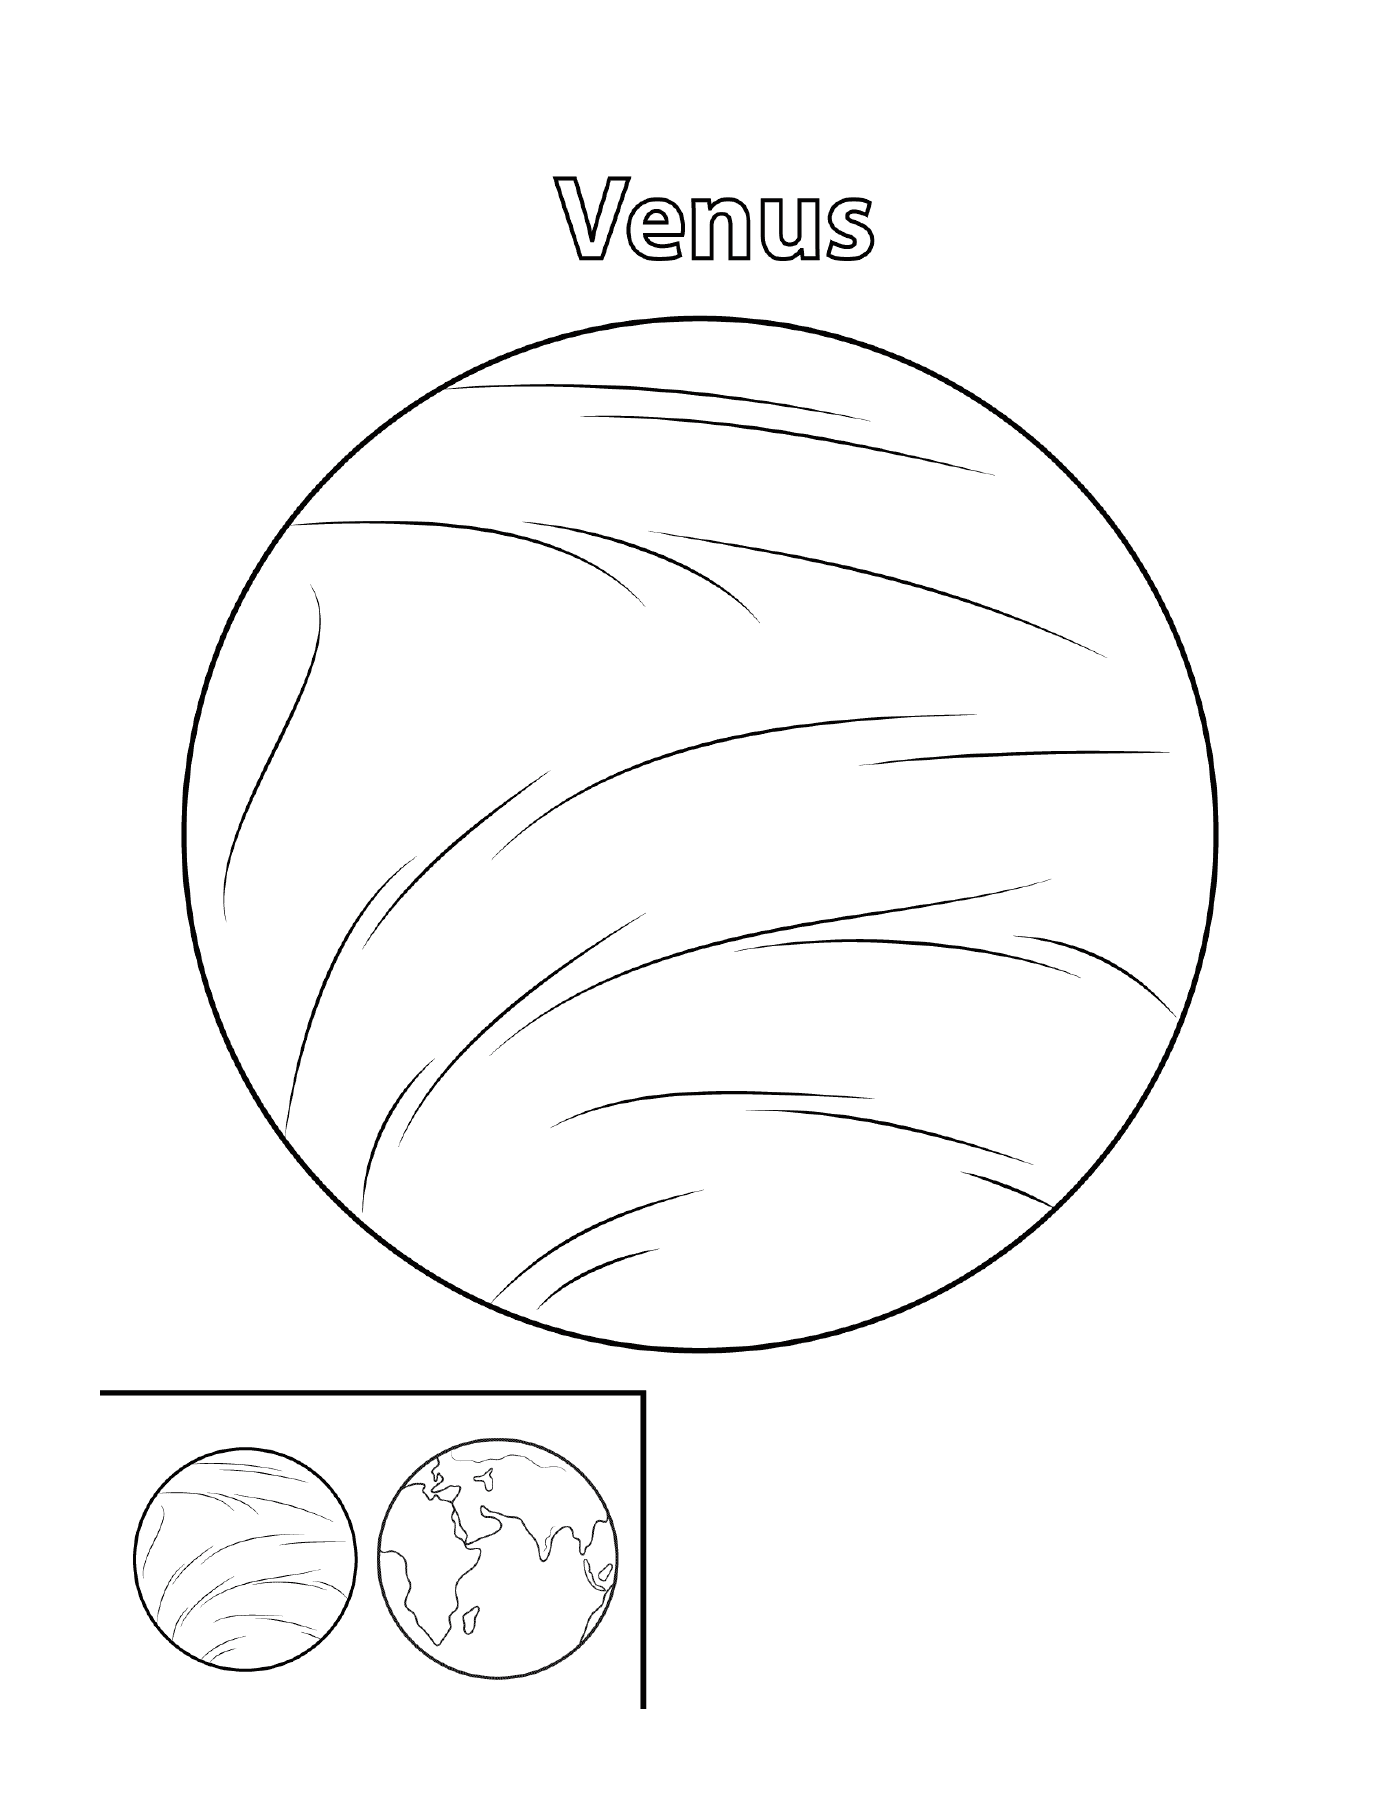  Planet Venus in space 